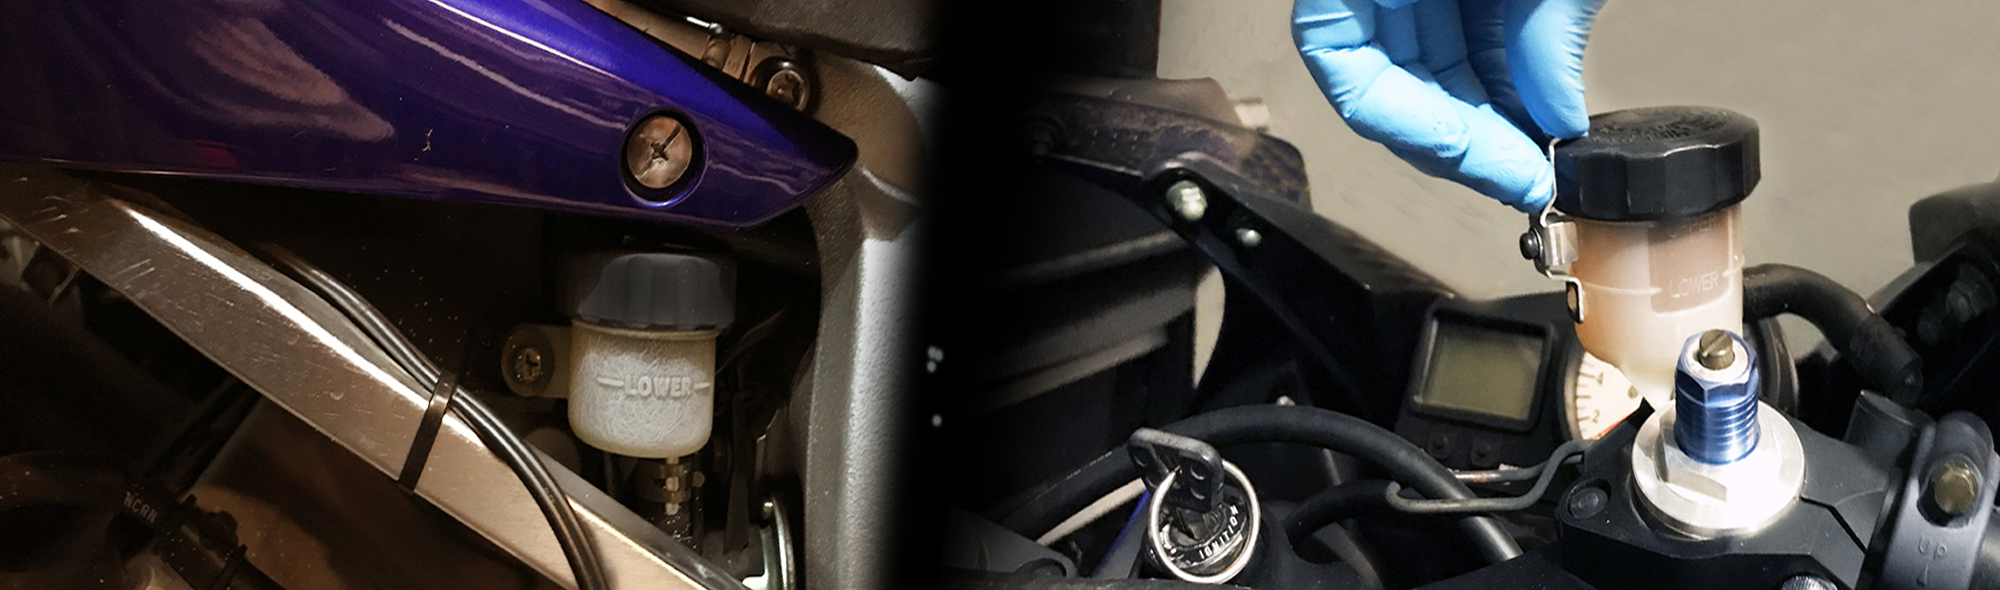 Замена тормозной жидкости и прокачка тормозной системы на мотоцикле